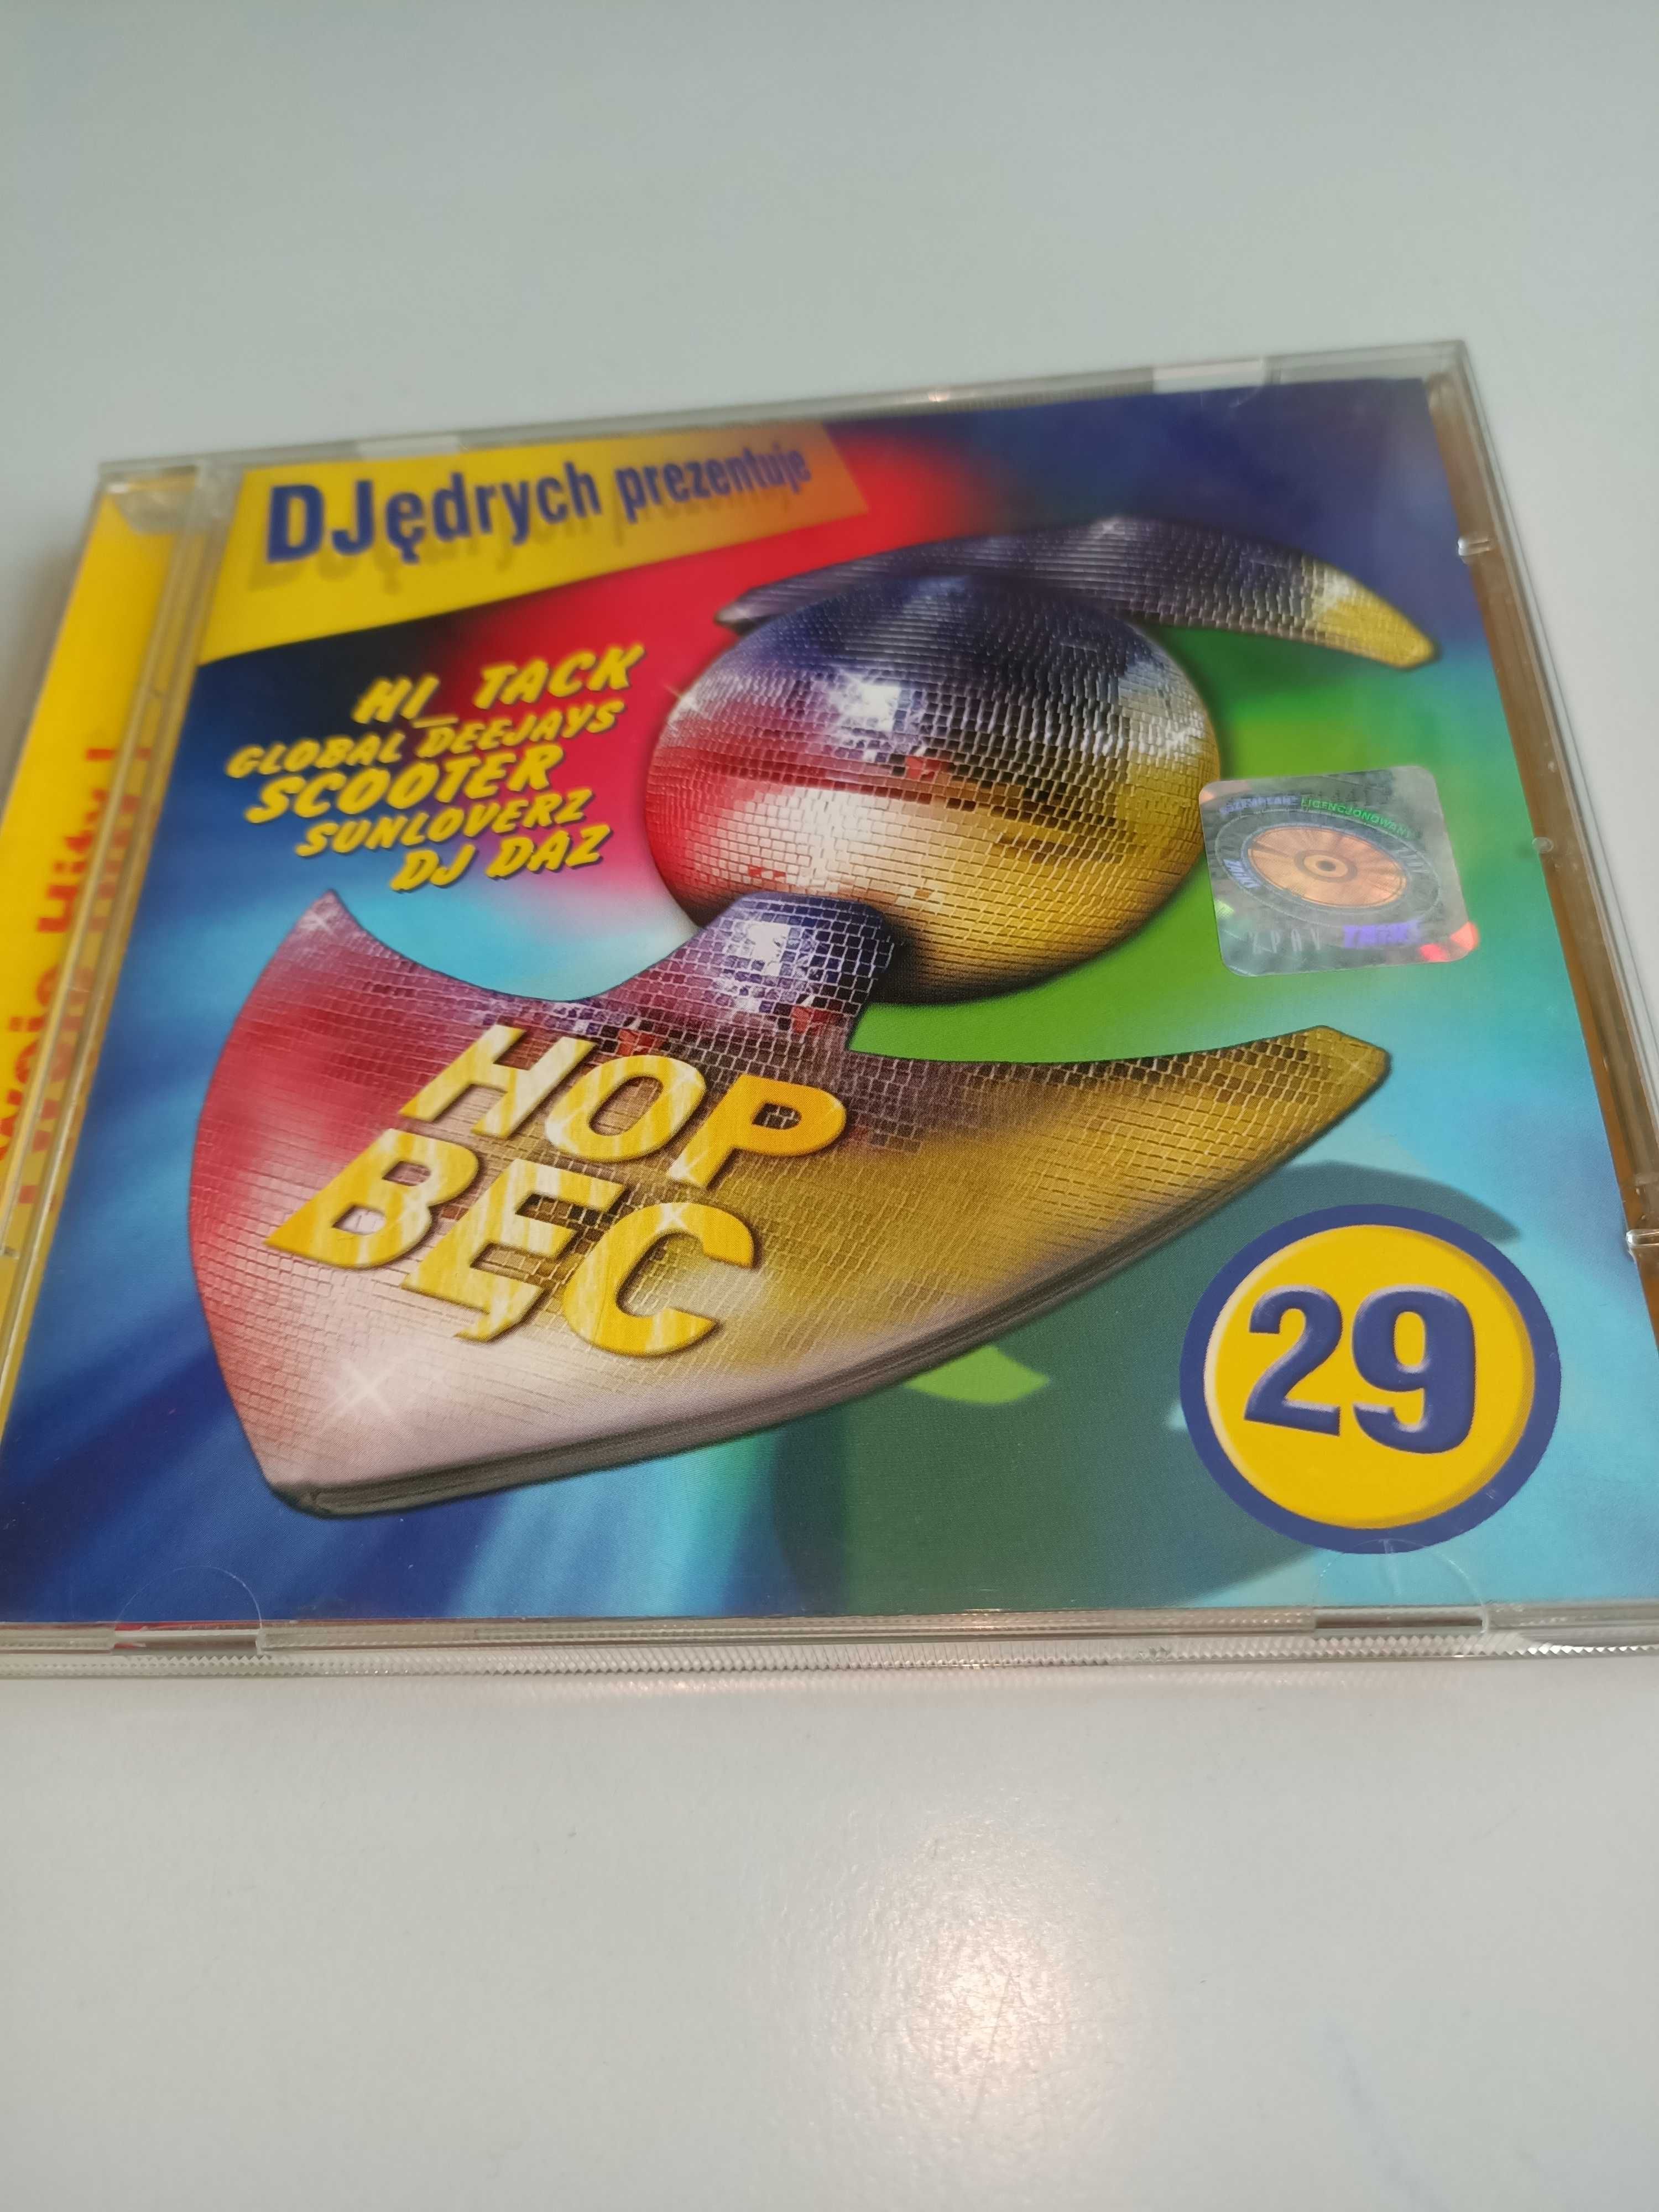 DJędrych prezentuje Hop Bęc 29 CD